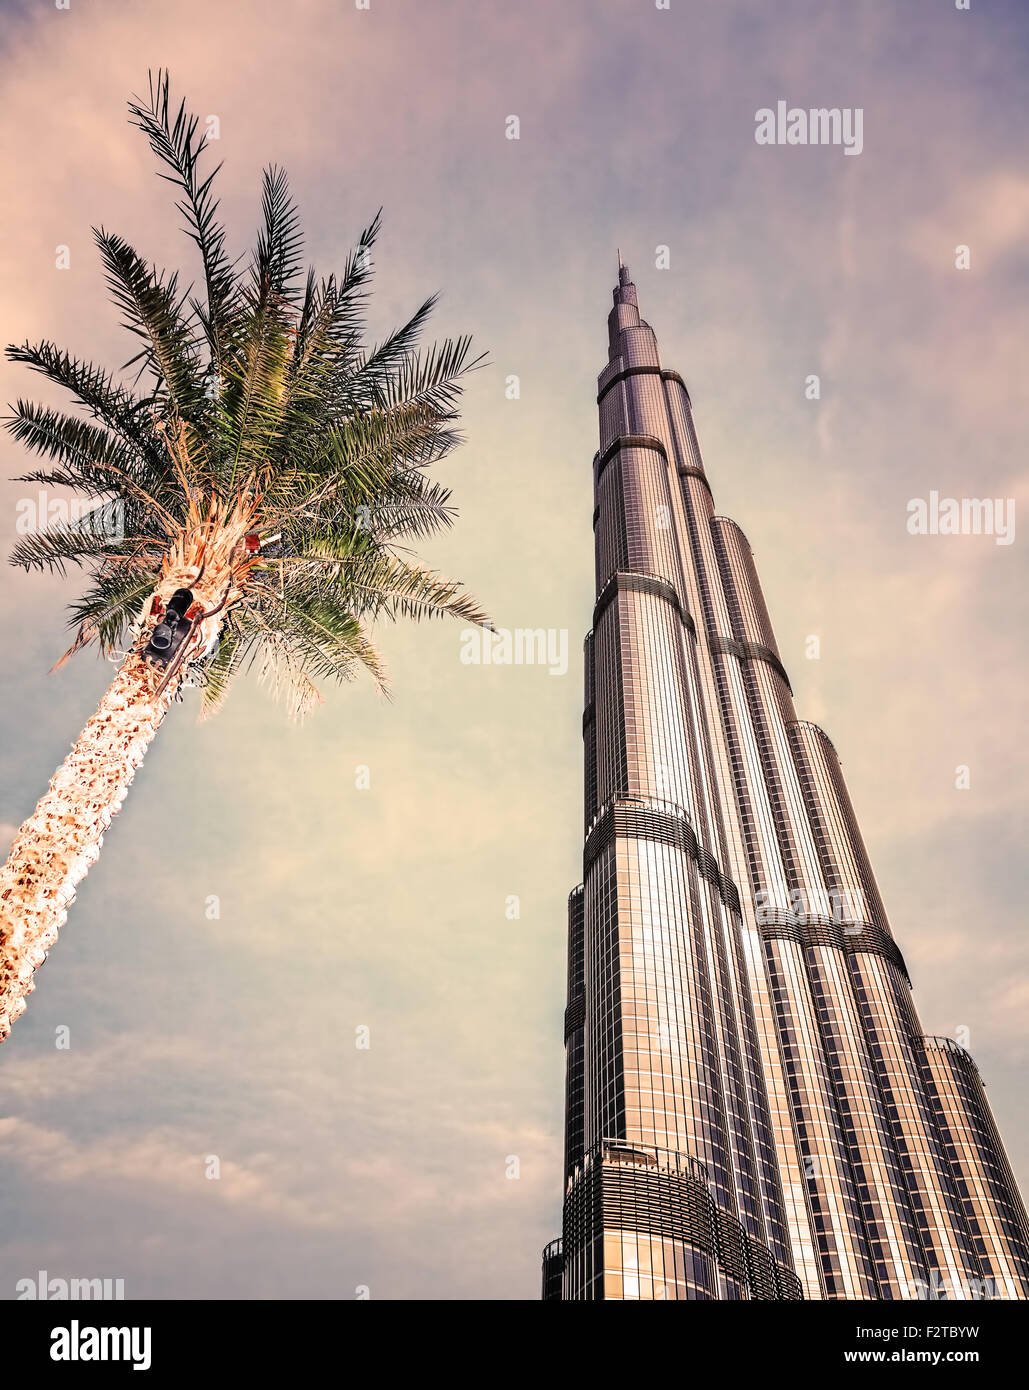 DUBAI, Emirati Arabi Uniti - 16 febbraio: Burj Khalifa - più alte del mondo torre al mondo a 828m, che si trova nel centro cittadino di Dubai Foto Stock